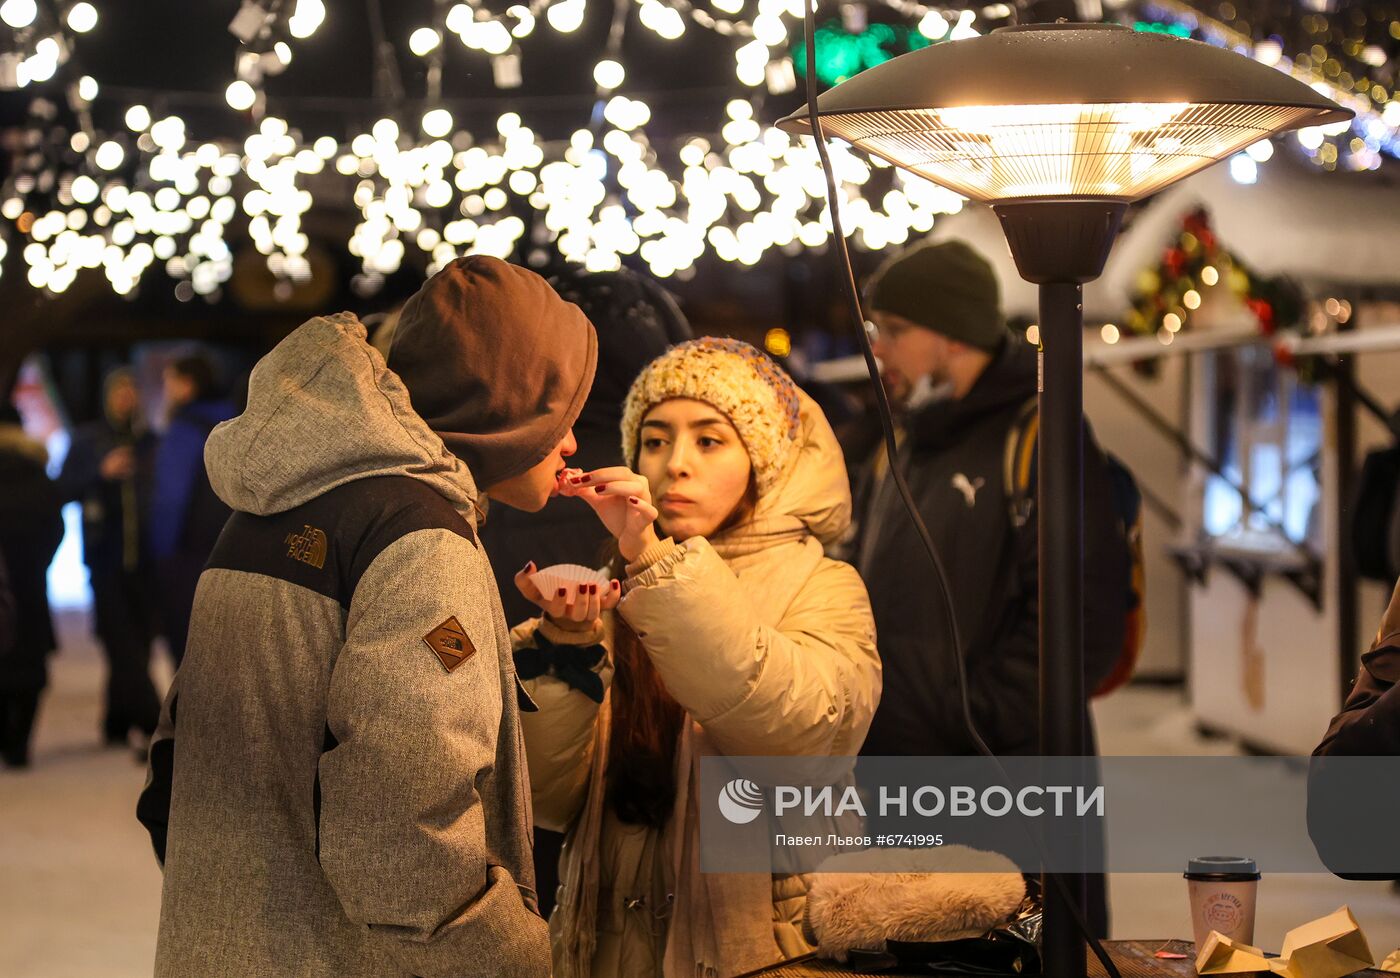 Фестиваль блюд северной кухни "Вкус Арктики" в Мурманске